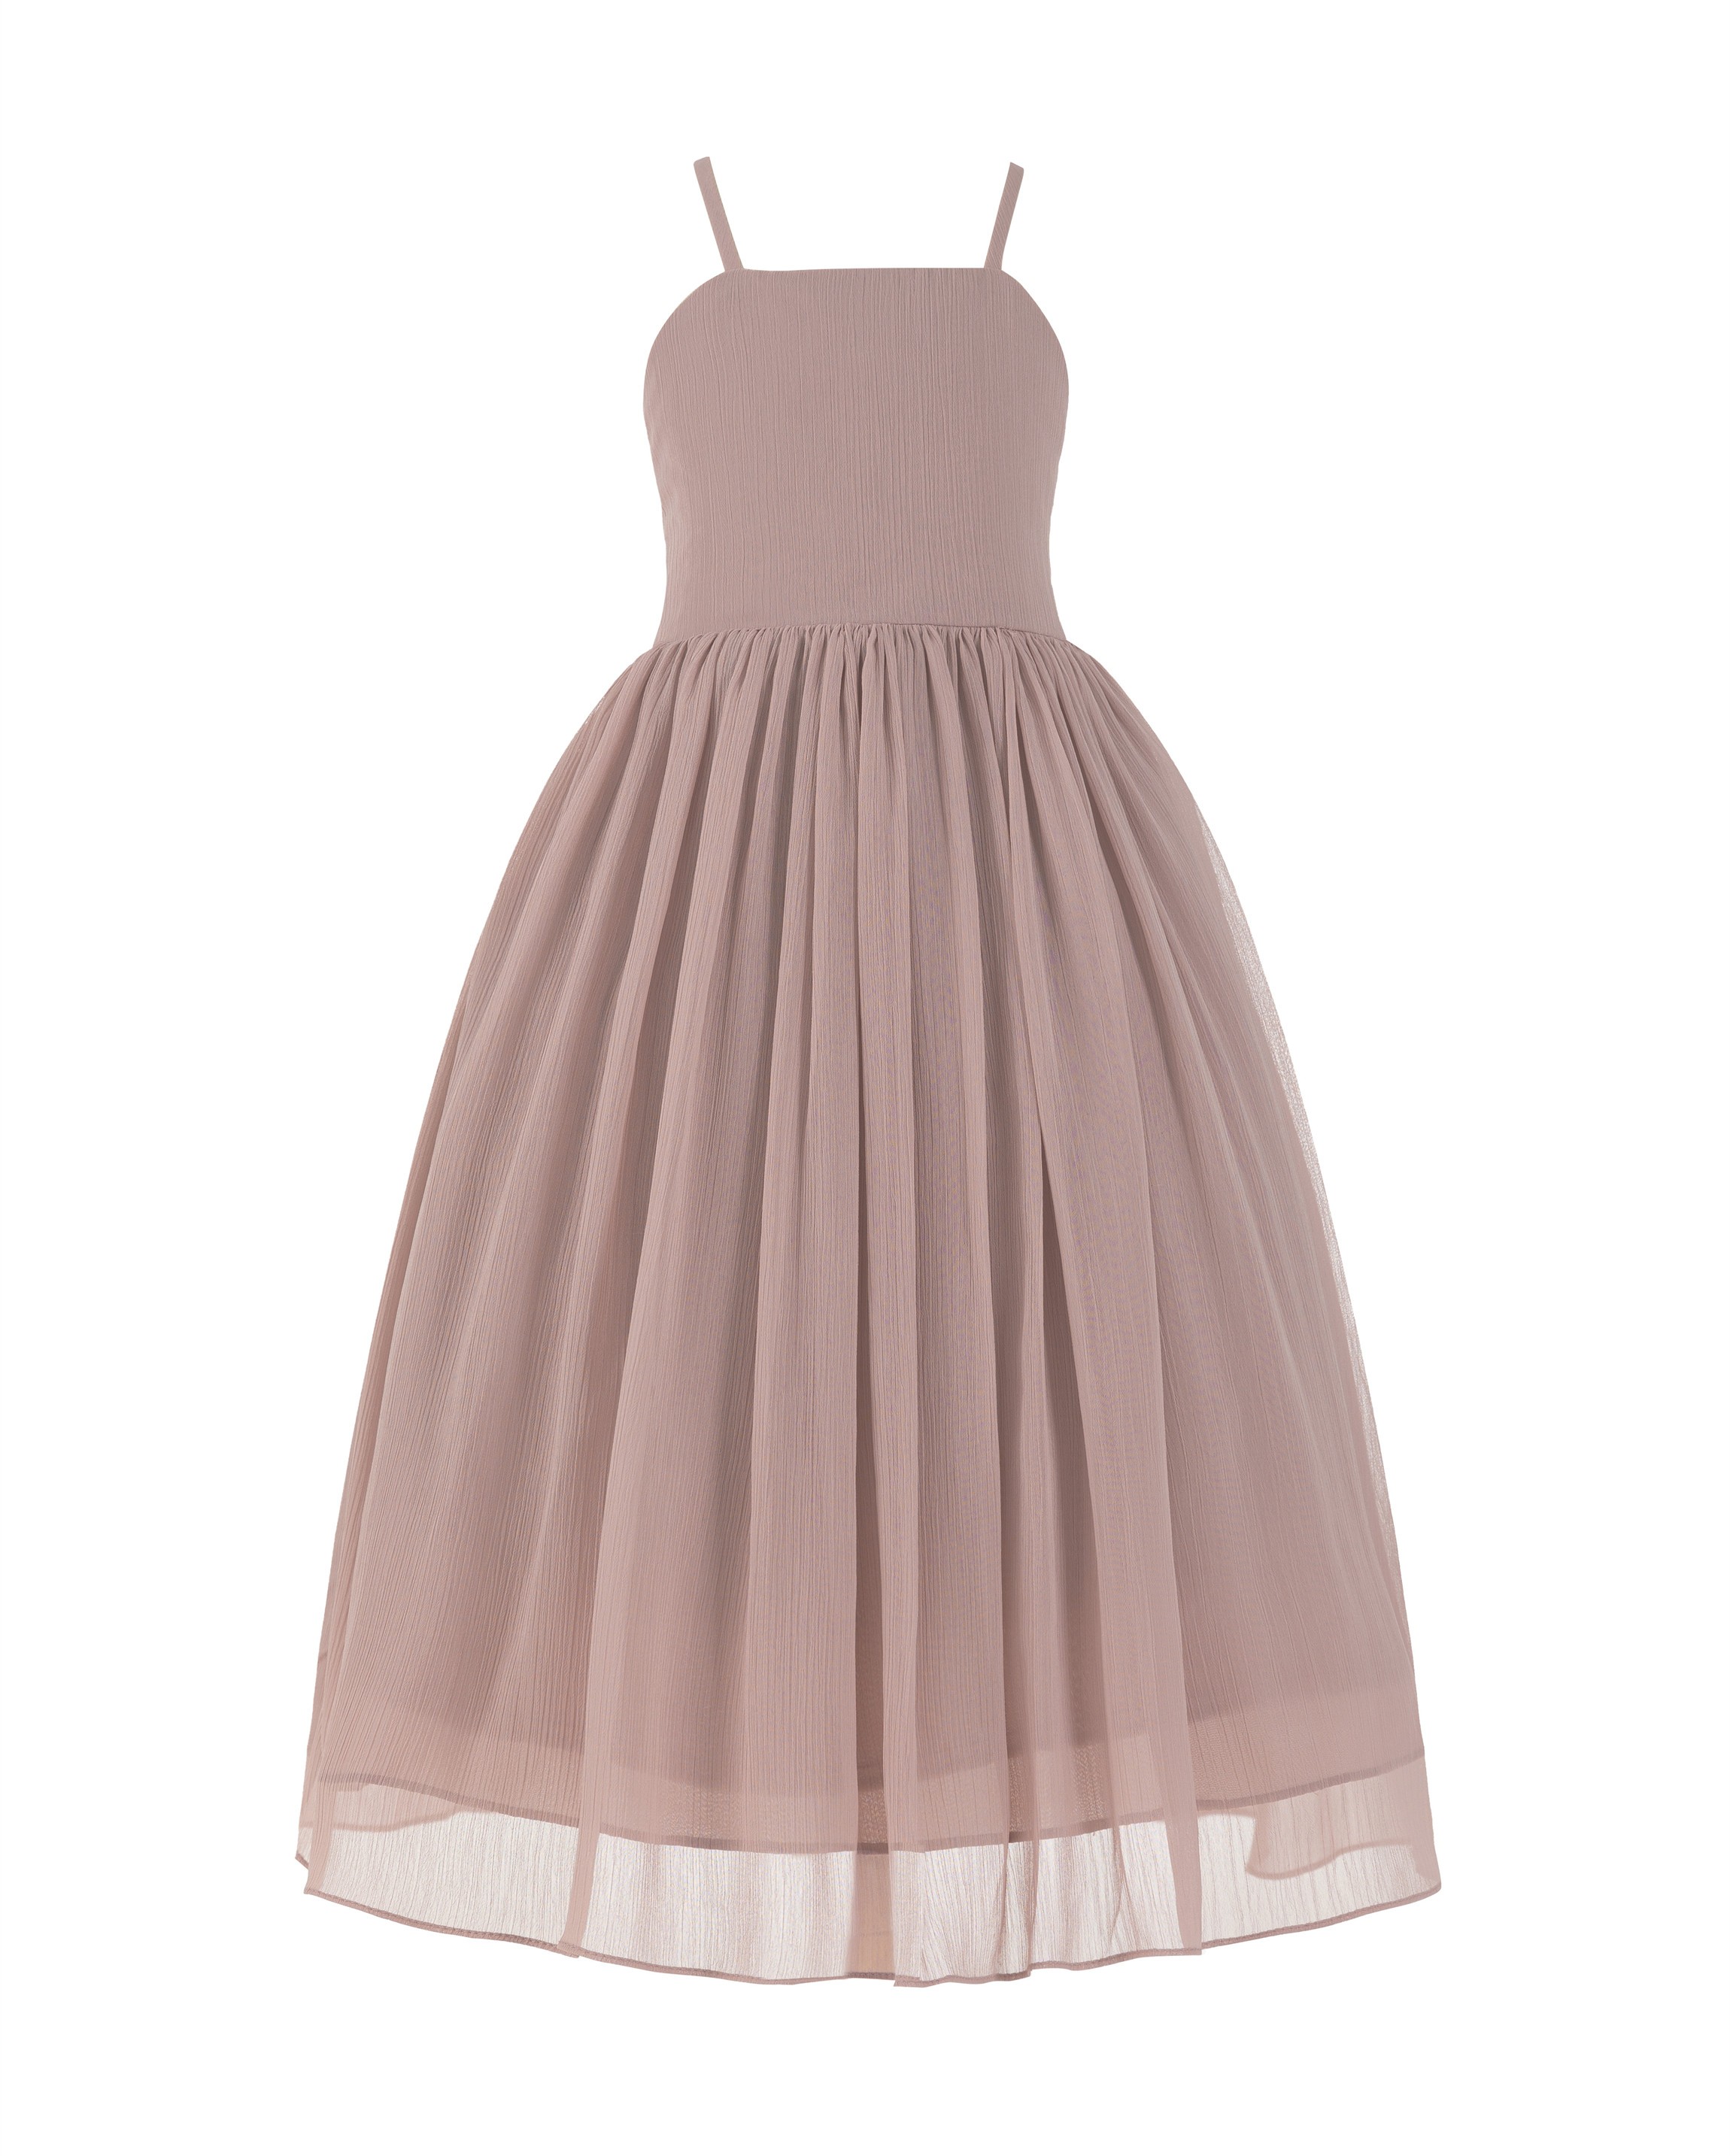 Mauve Criss Cross Chiffon Flower Girl Dress Summer Dresses 191